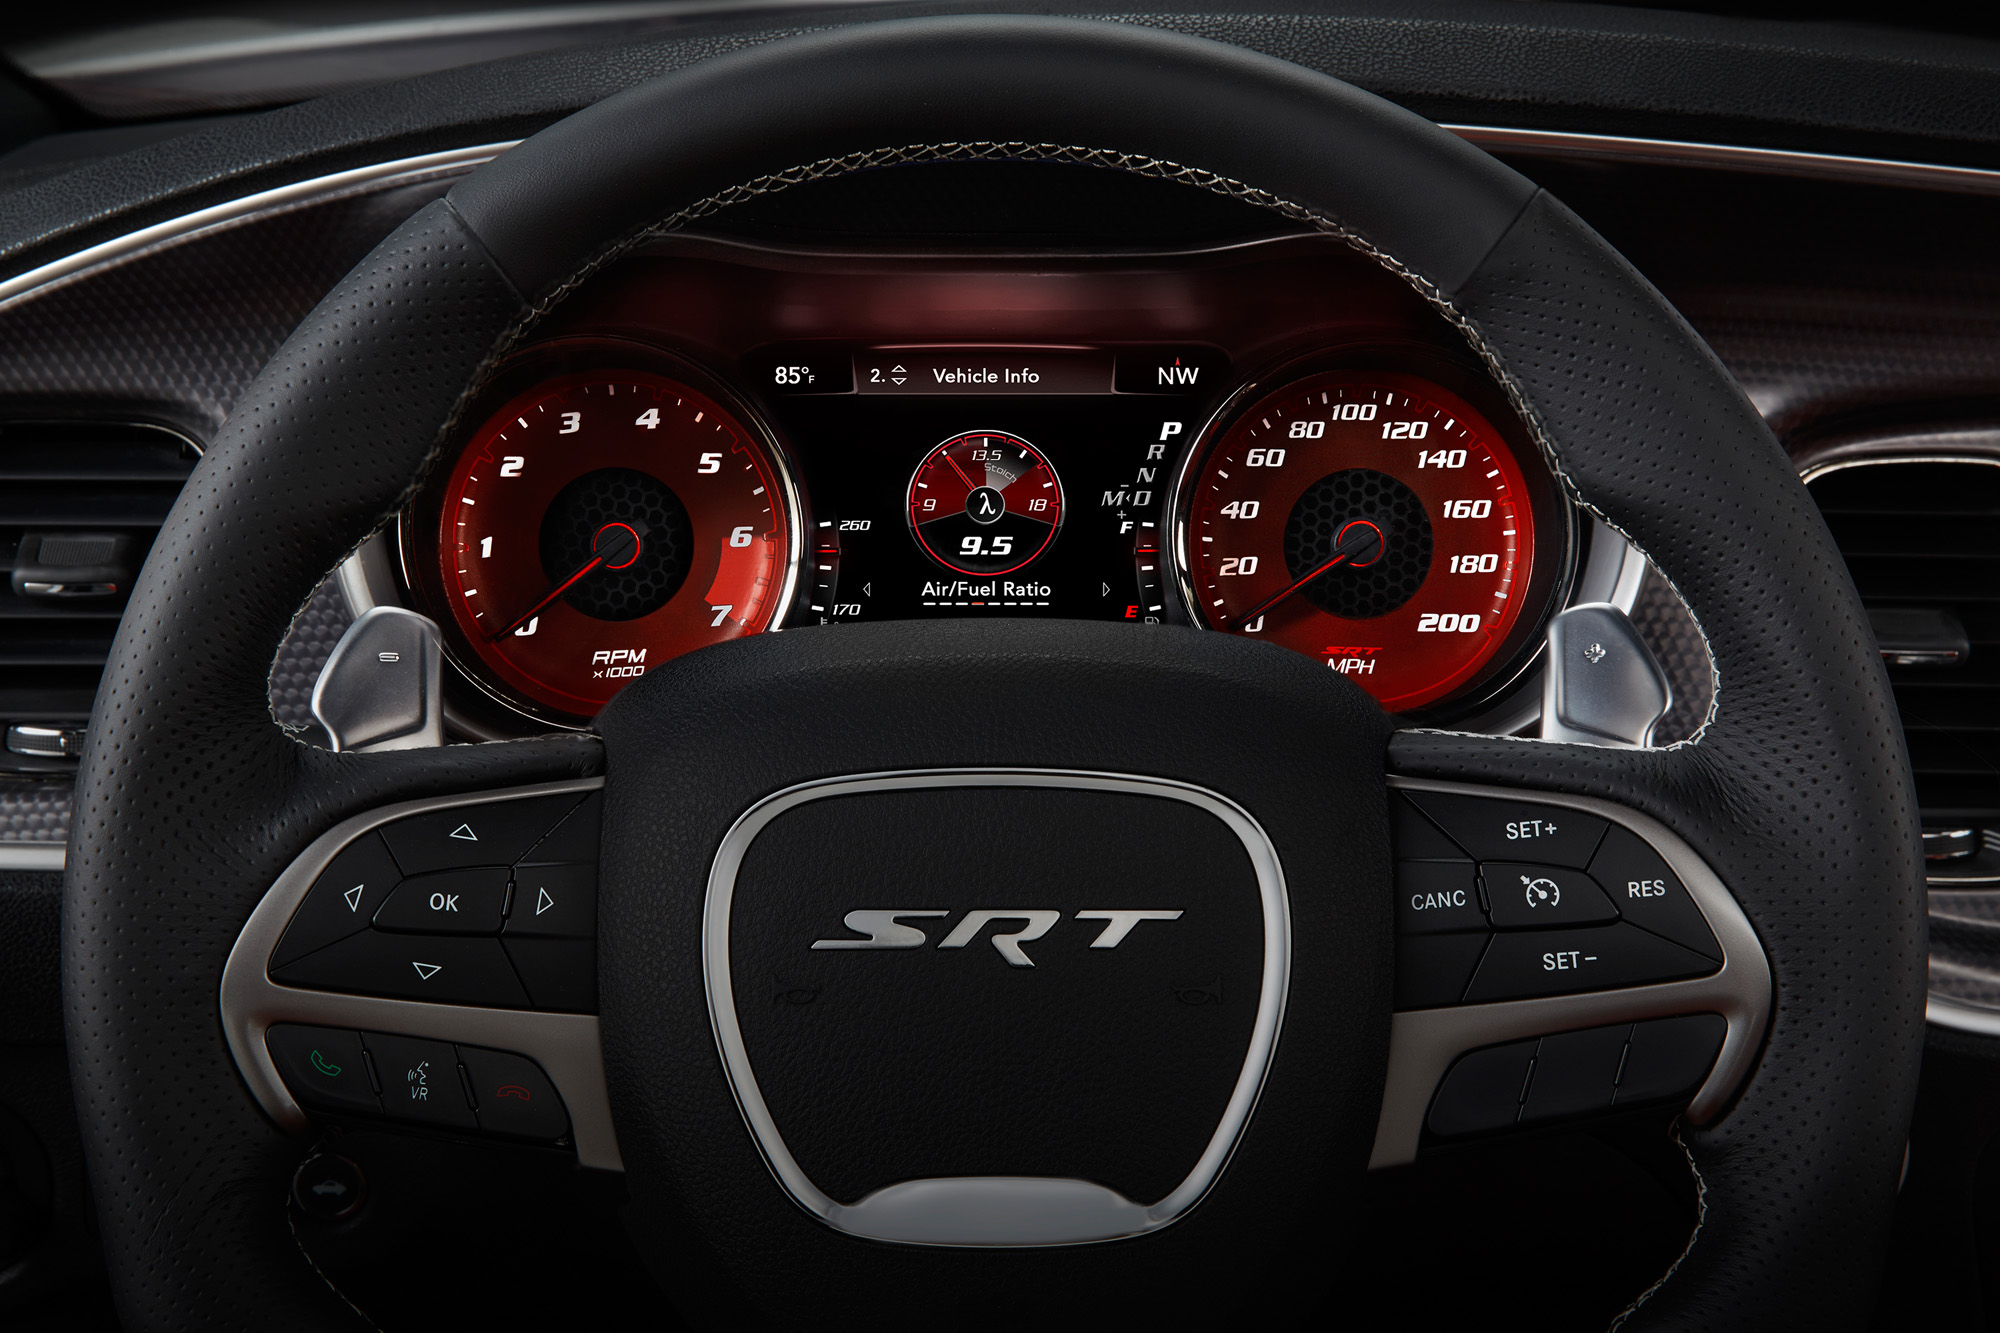 2015 Dodge Charger SRT - Air/Fuel Ratio screen